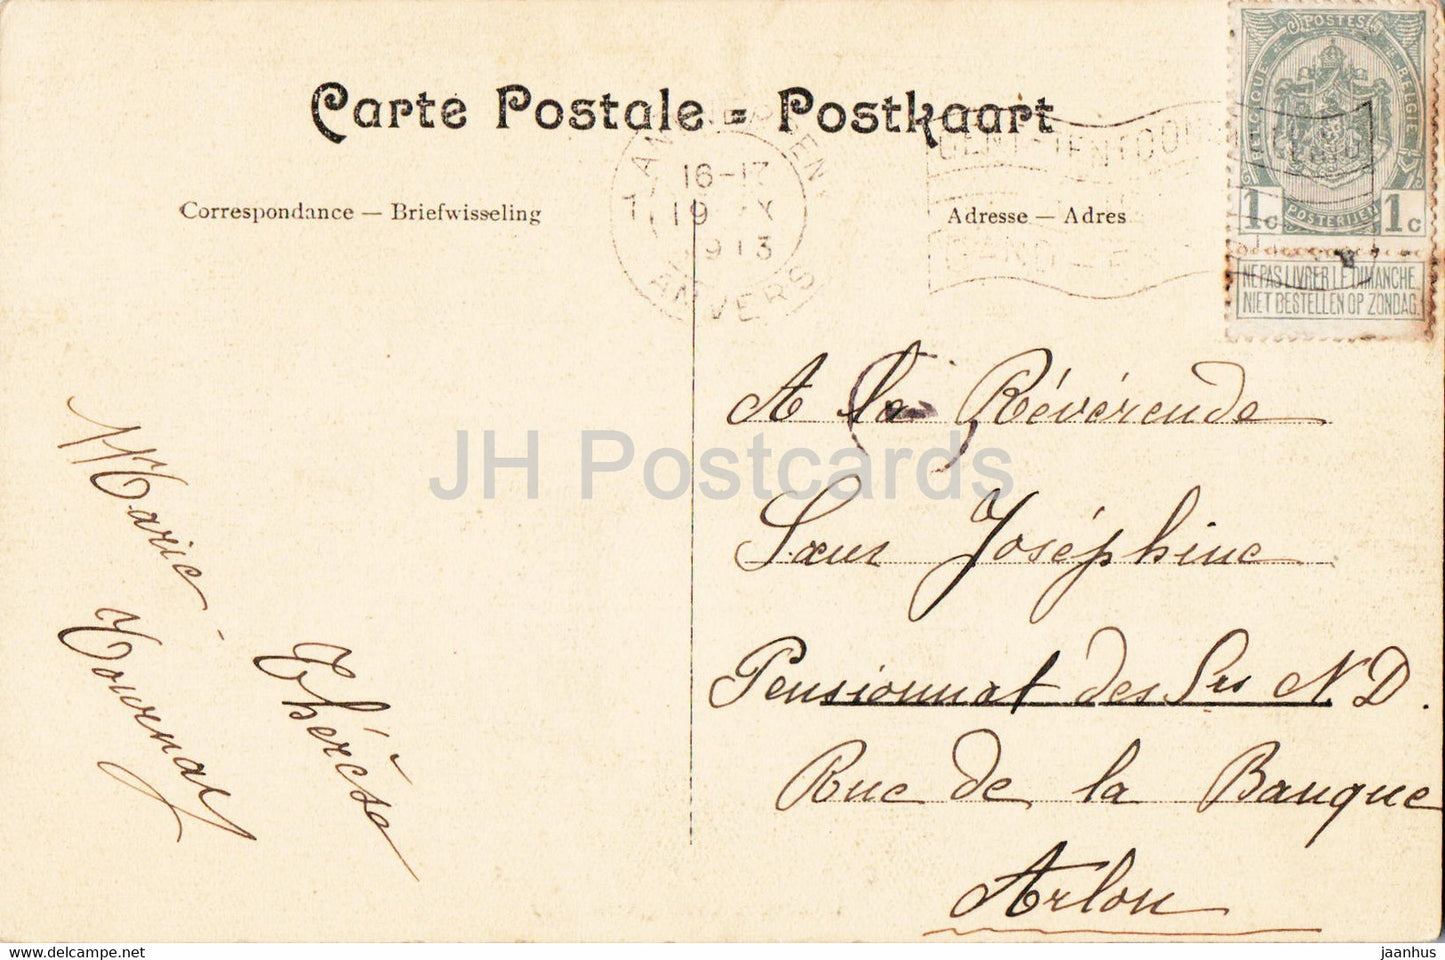 Anvers - Antwerpen - Eglise St Paul - Interieur - vue generale - church - 910 - old postcard - 1913 - Belgium - used